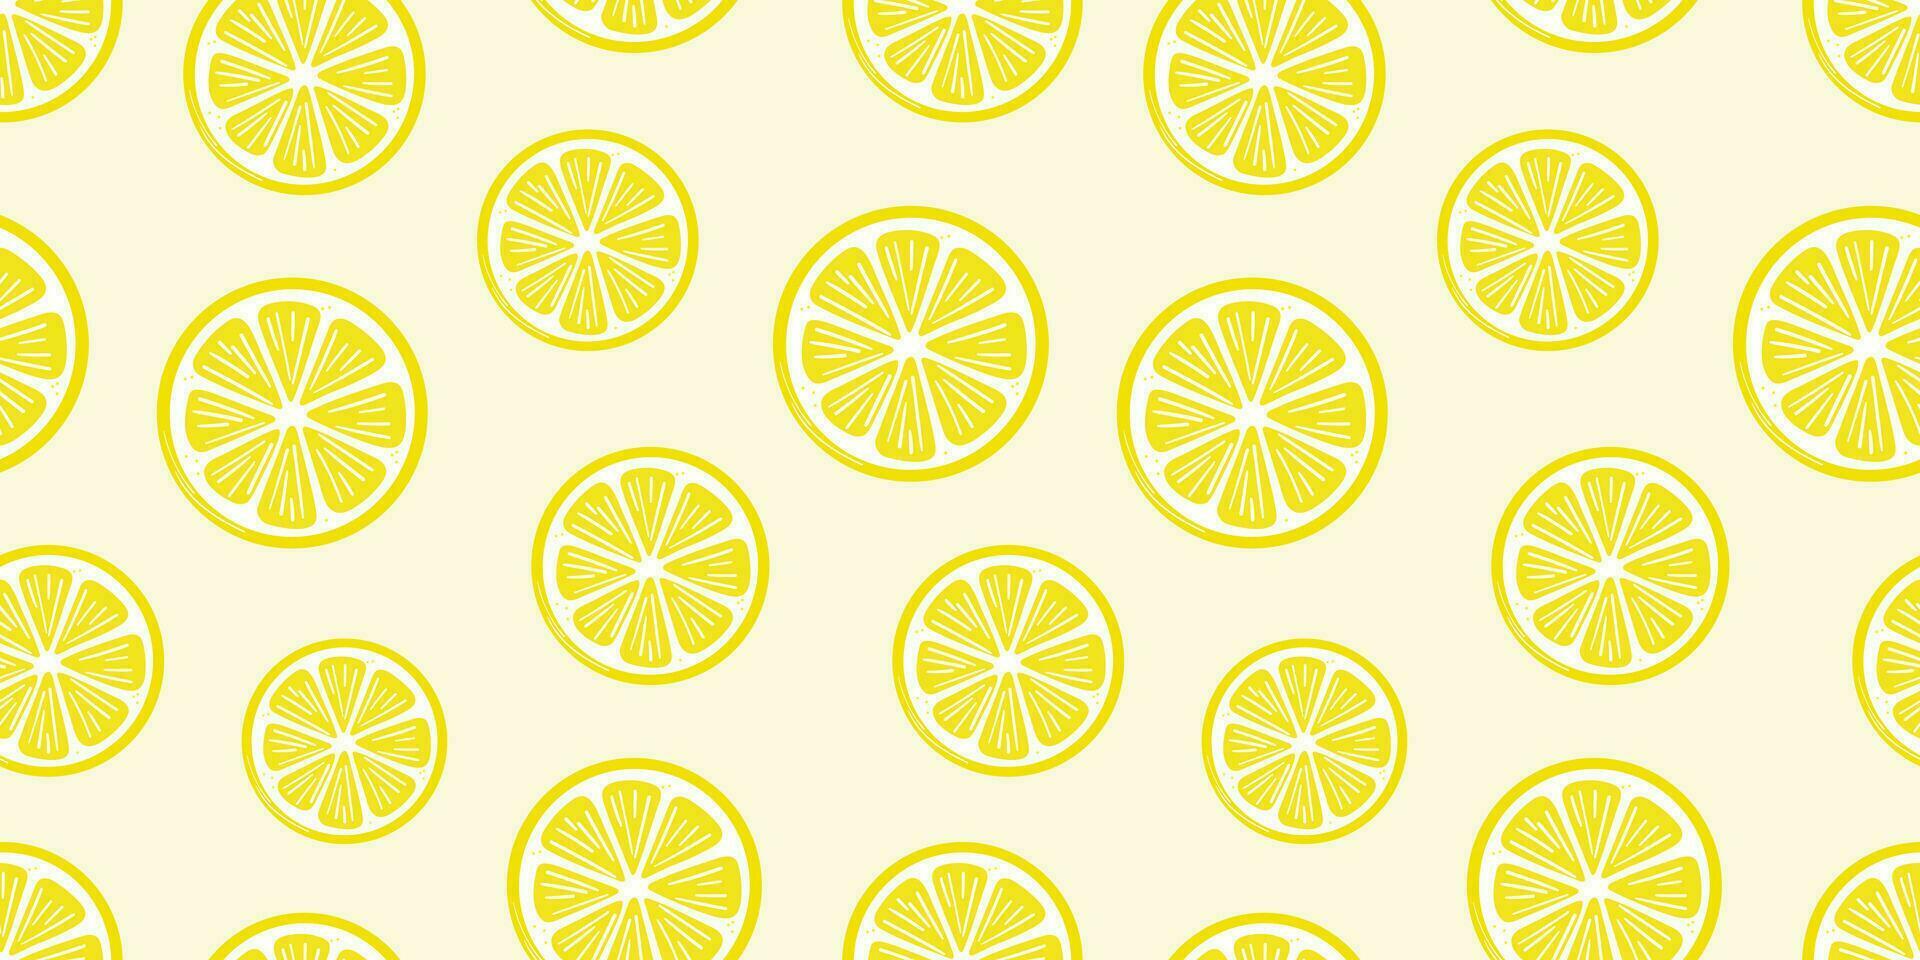 Zitrone Scheibe Vektor Hintergrund, nahtlos wiederholen Muster Hintergrund mit Zitrusfrüchte Obst Scheiben